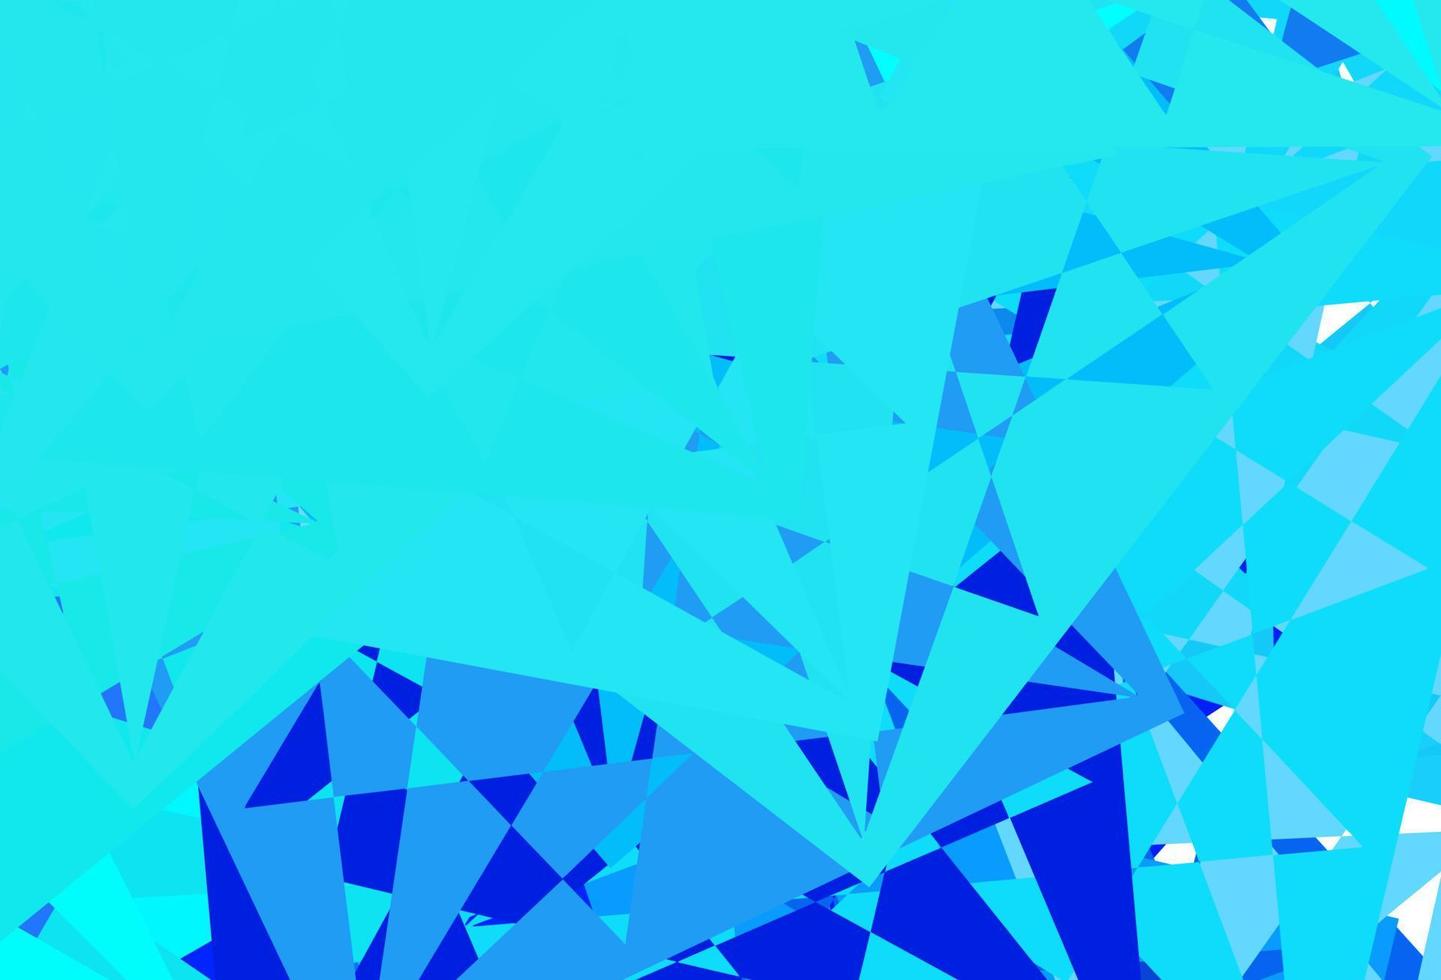 toile de fond de vecteur bleu clair avec des triangles, des lignes.